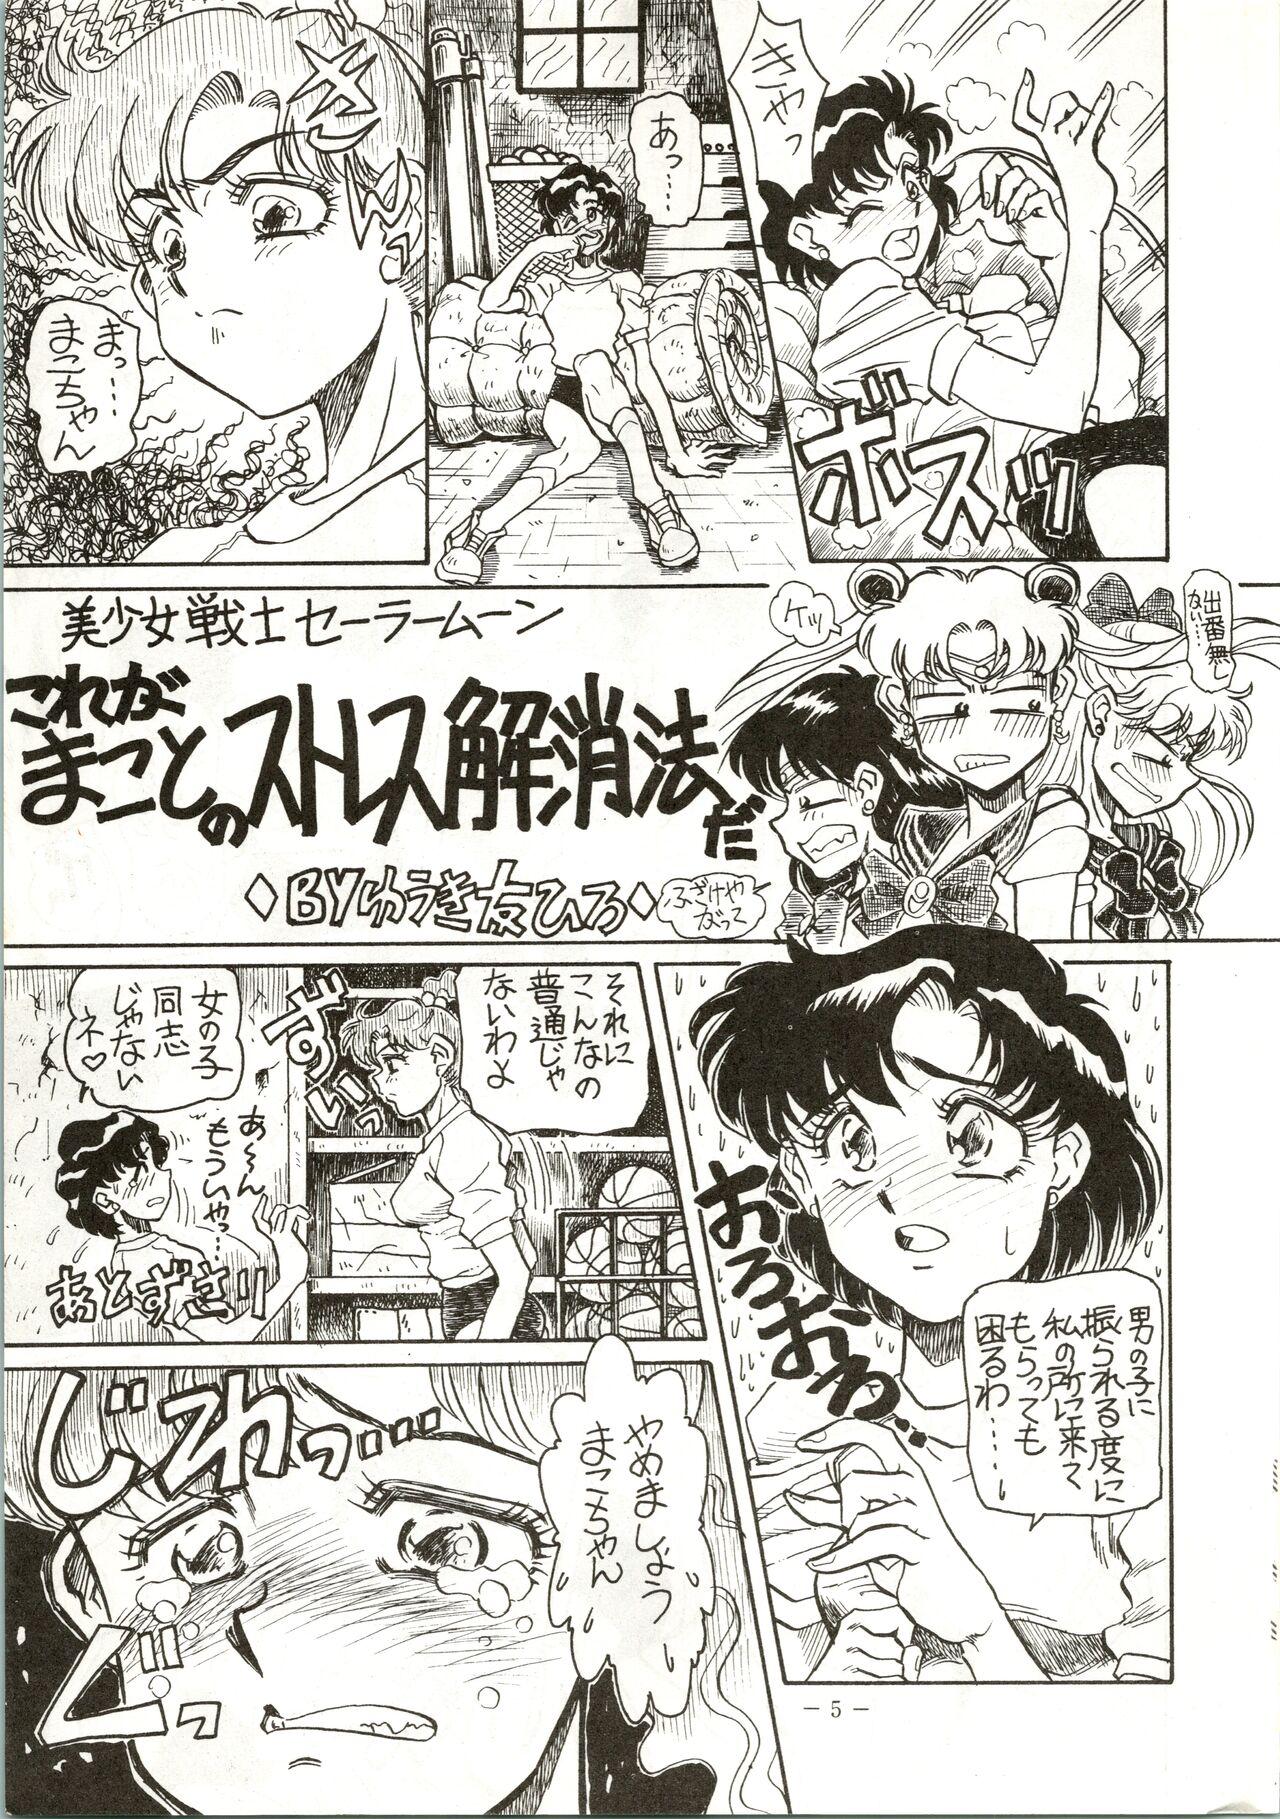 Cavalgando Getsugetsukaasuimokukinkin - Sailor moon | bishoujo senshi sailor moon Cumming - Page 5